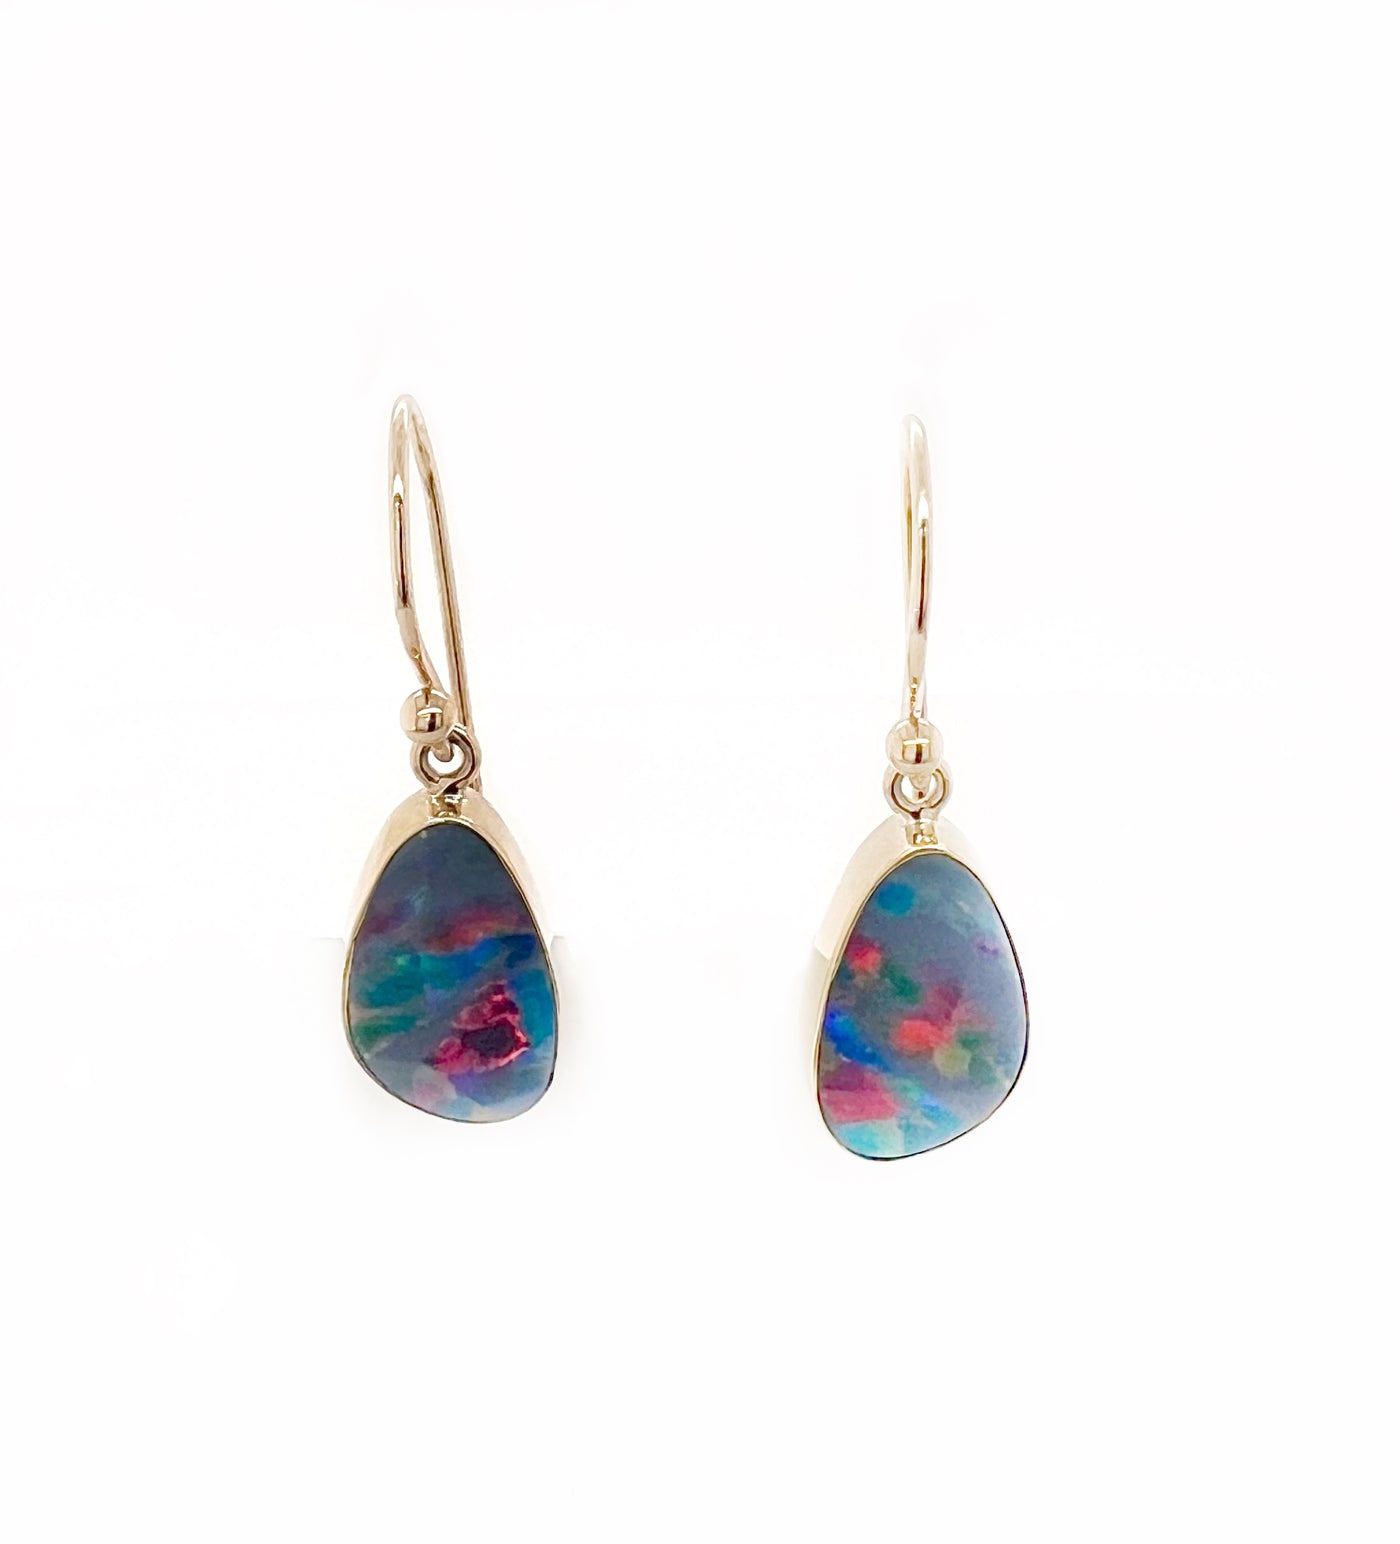 Free Form Opal Earrings